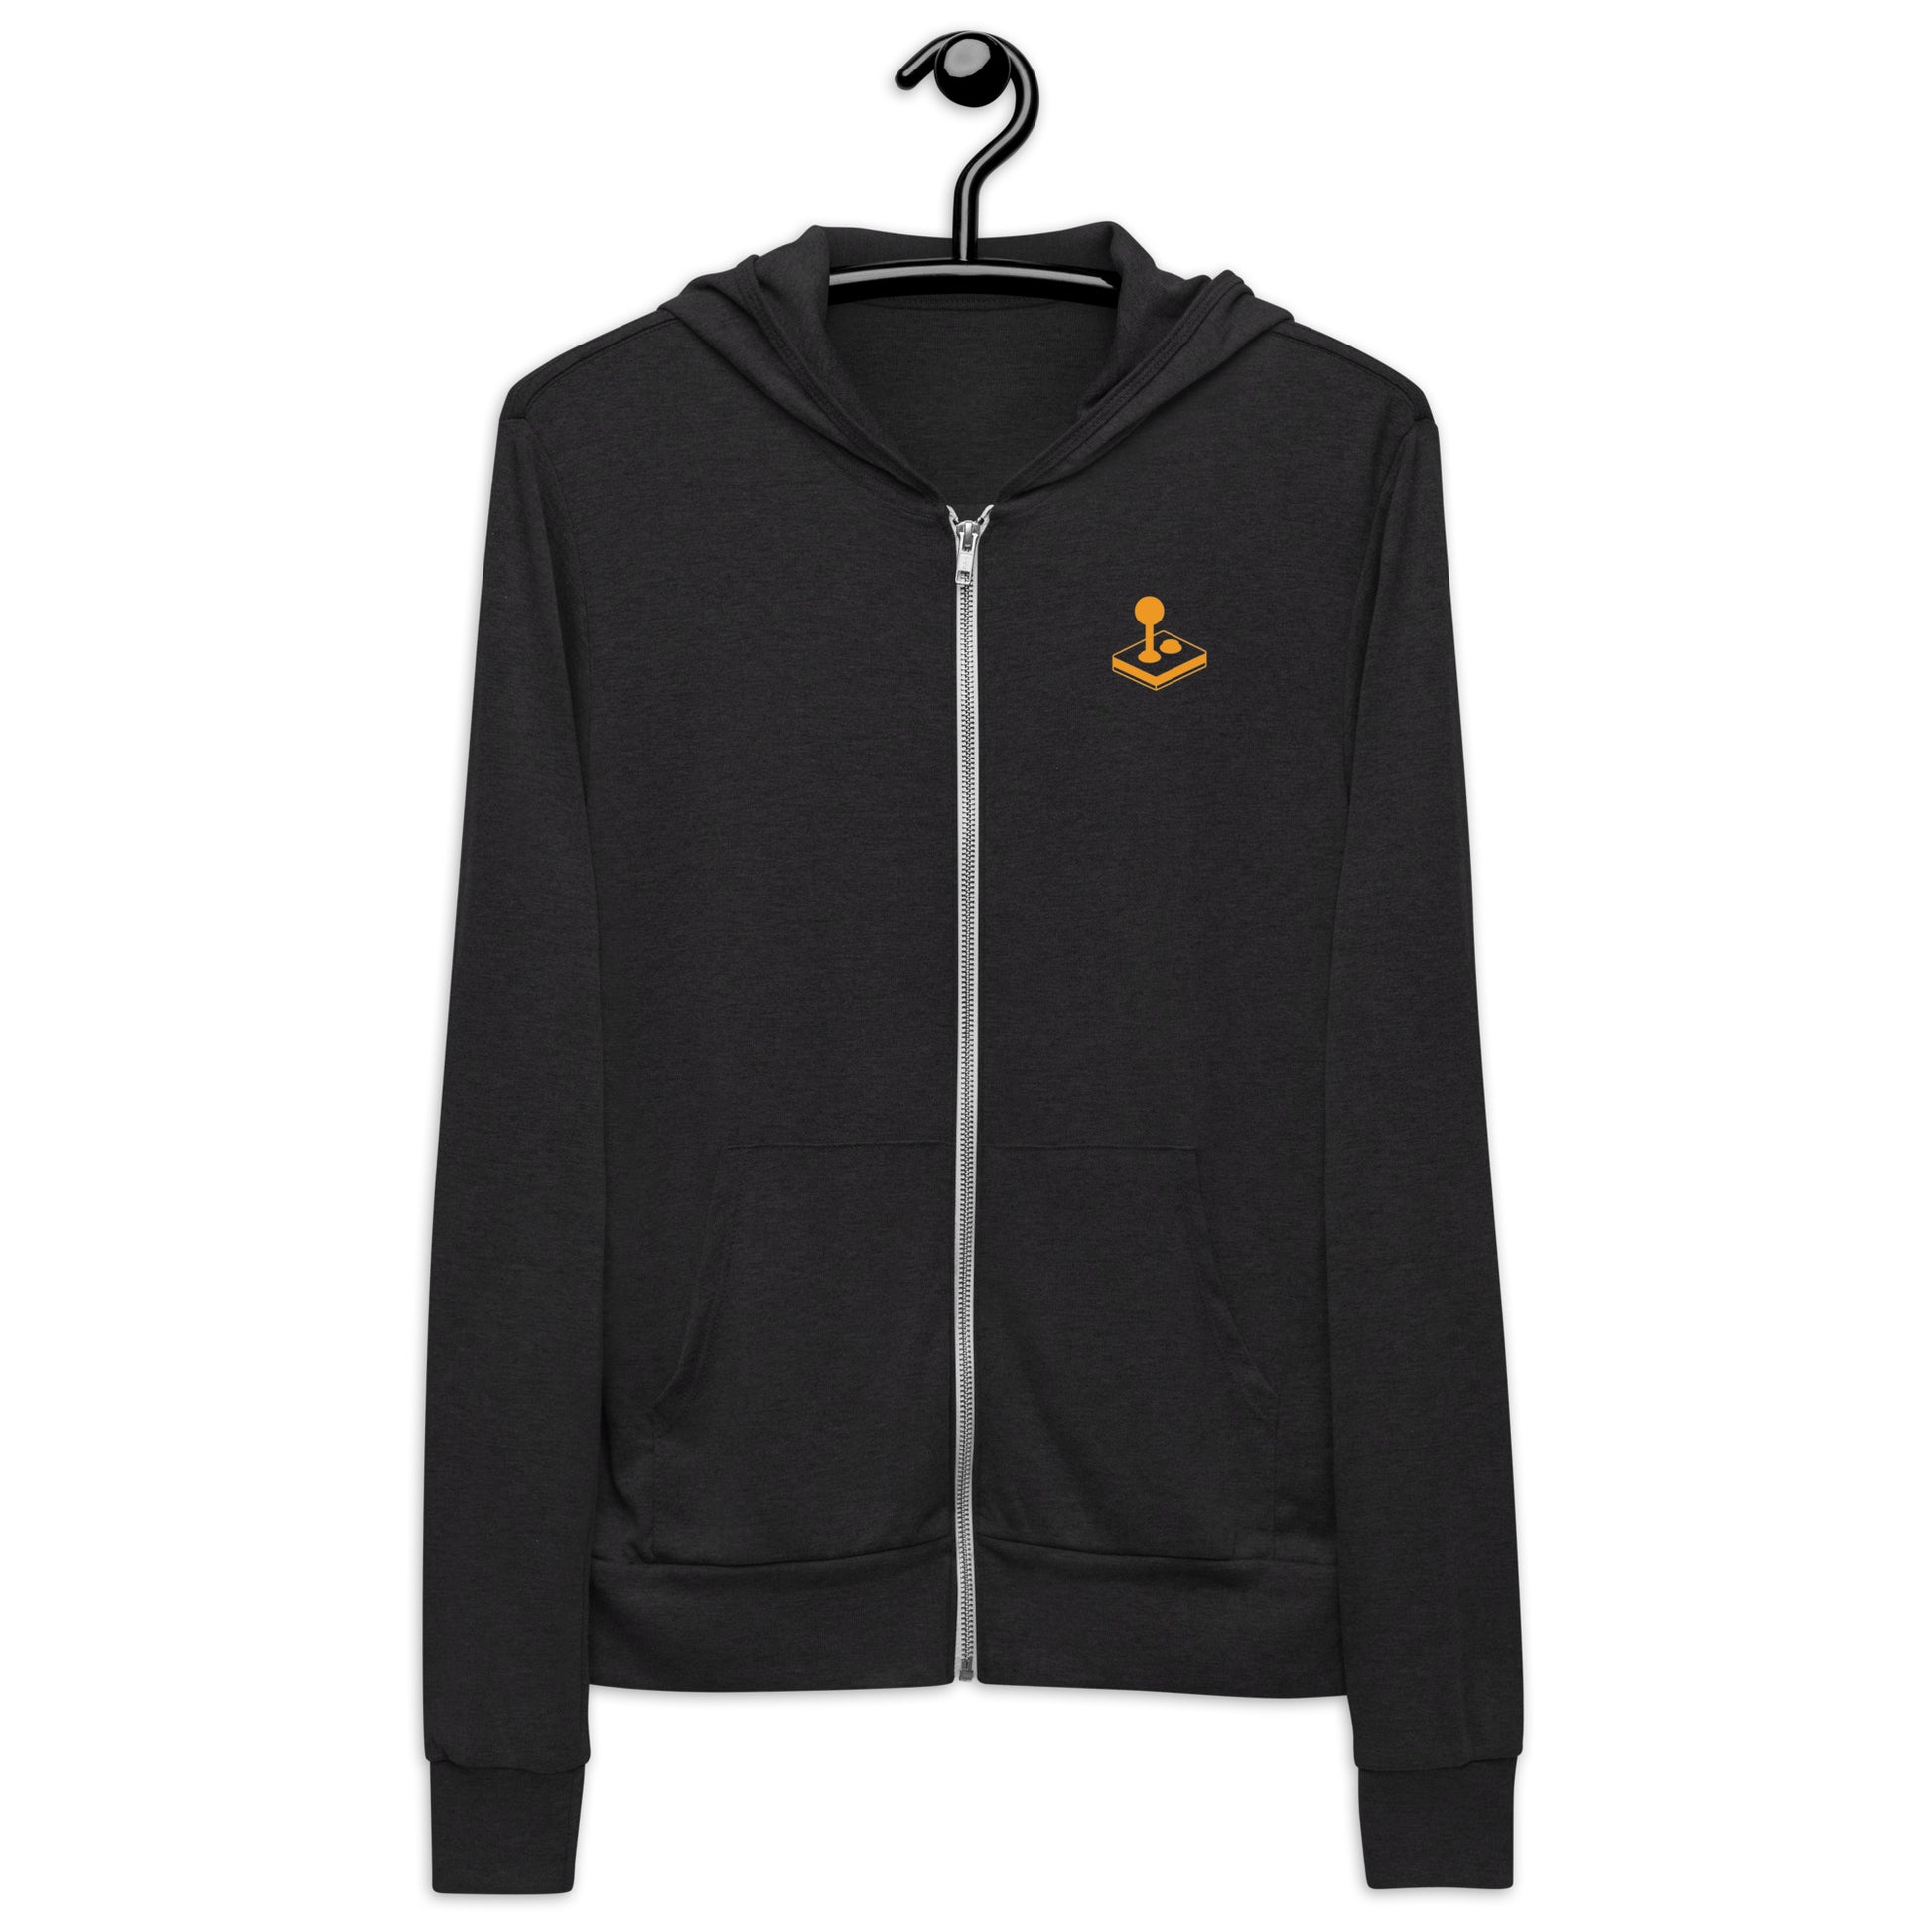 Joystick lightweight zip hoodie